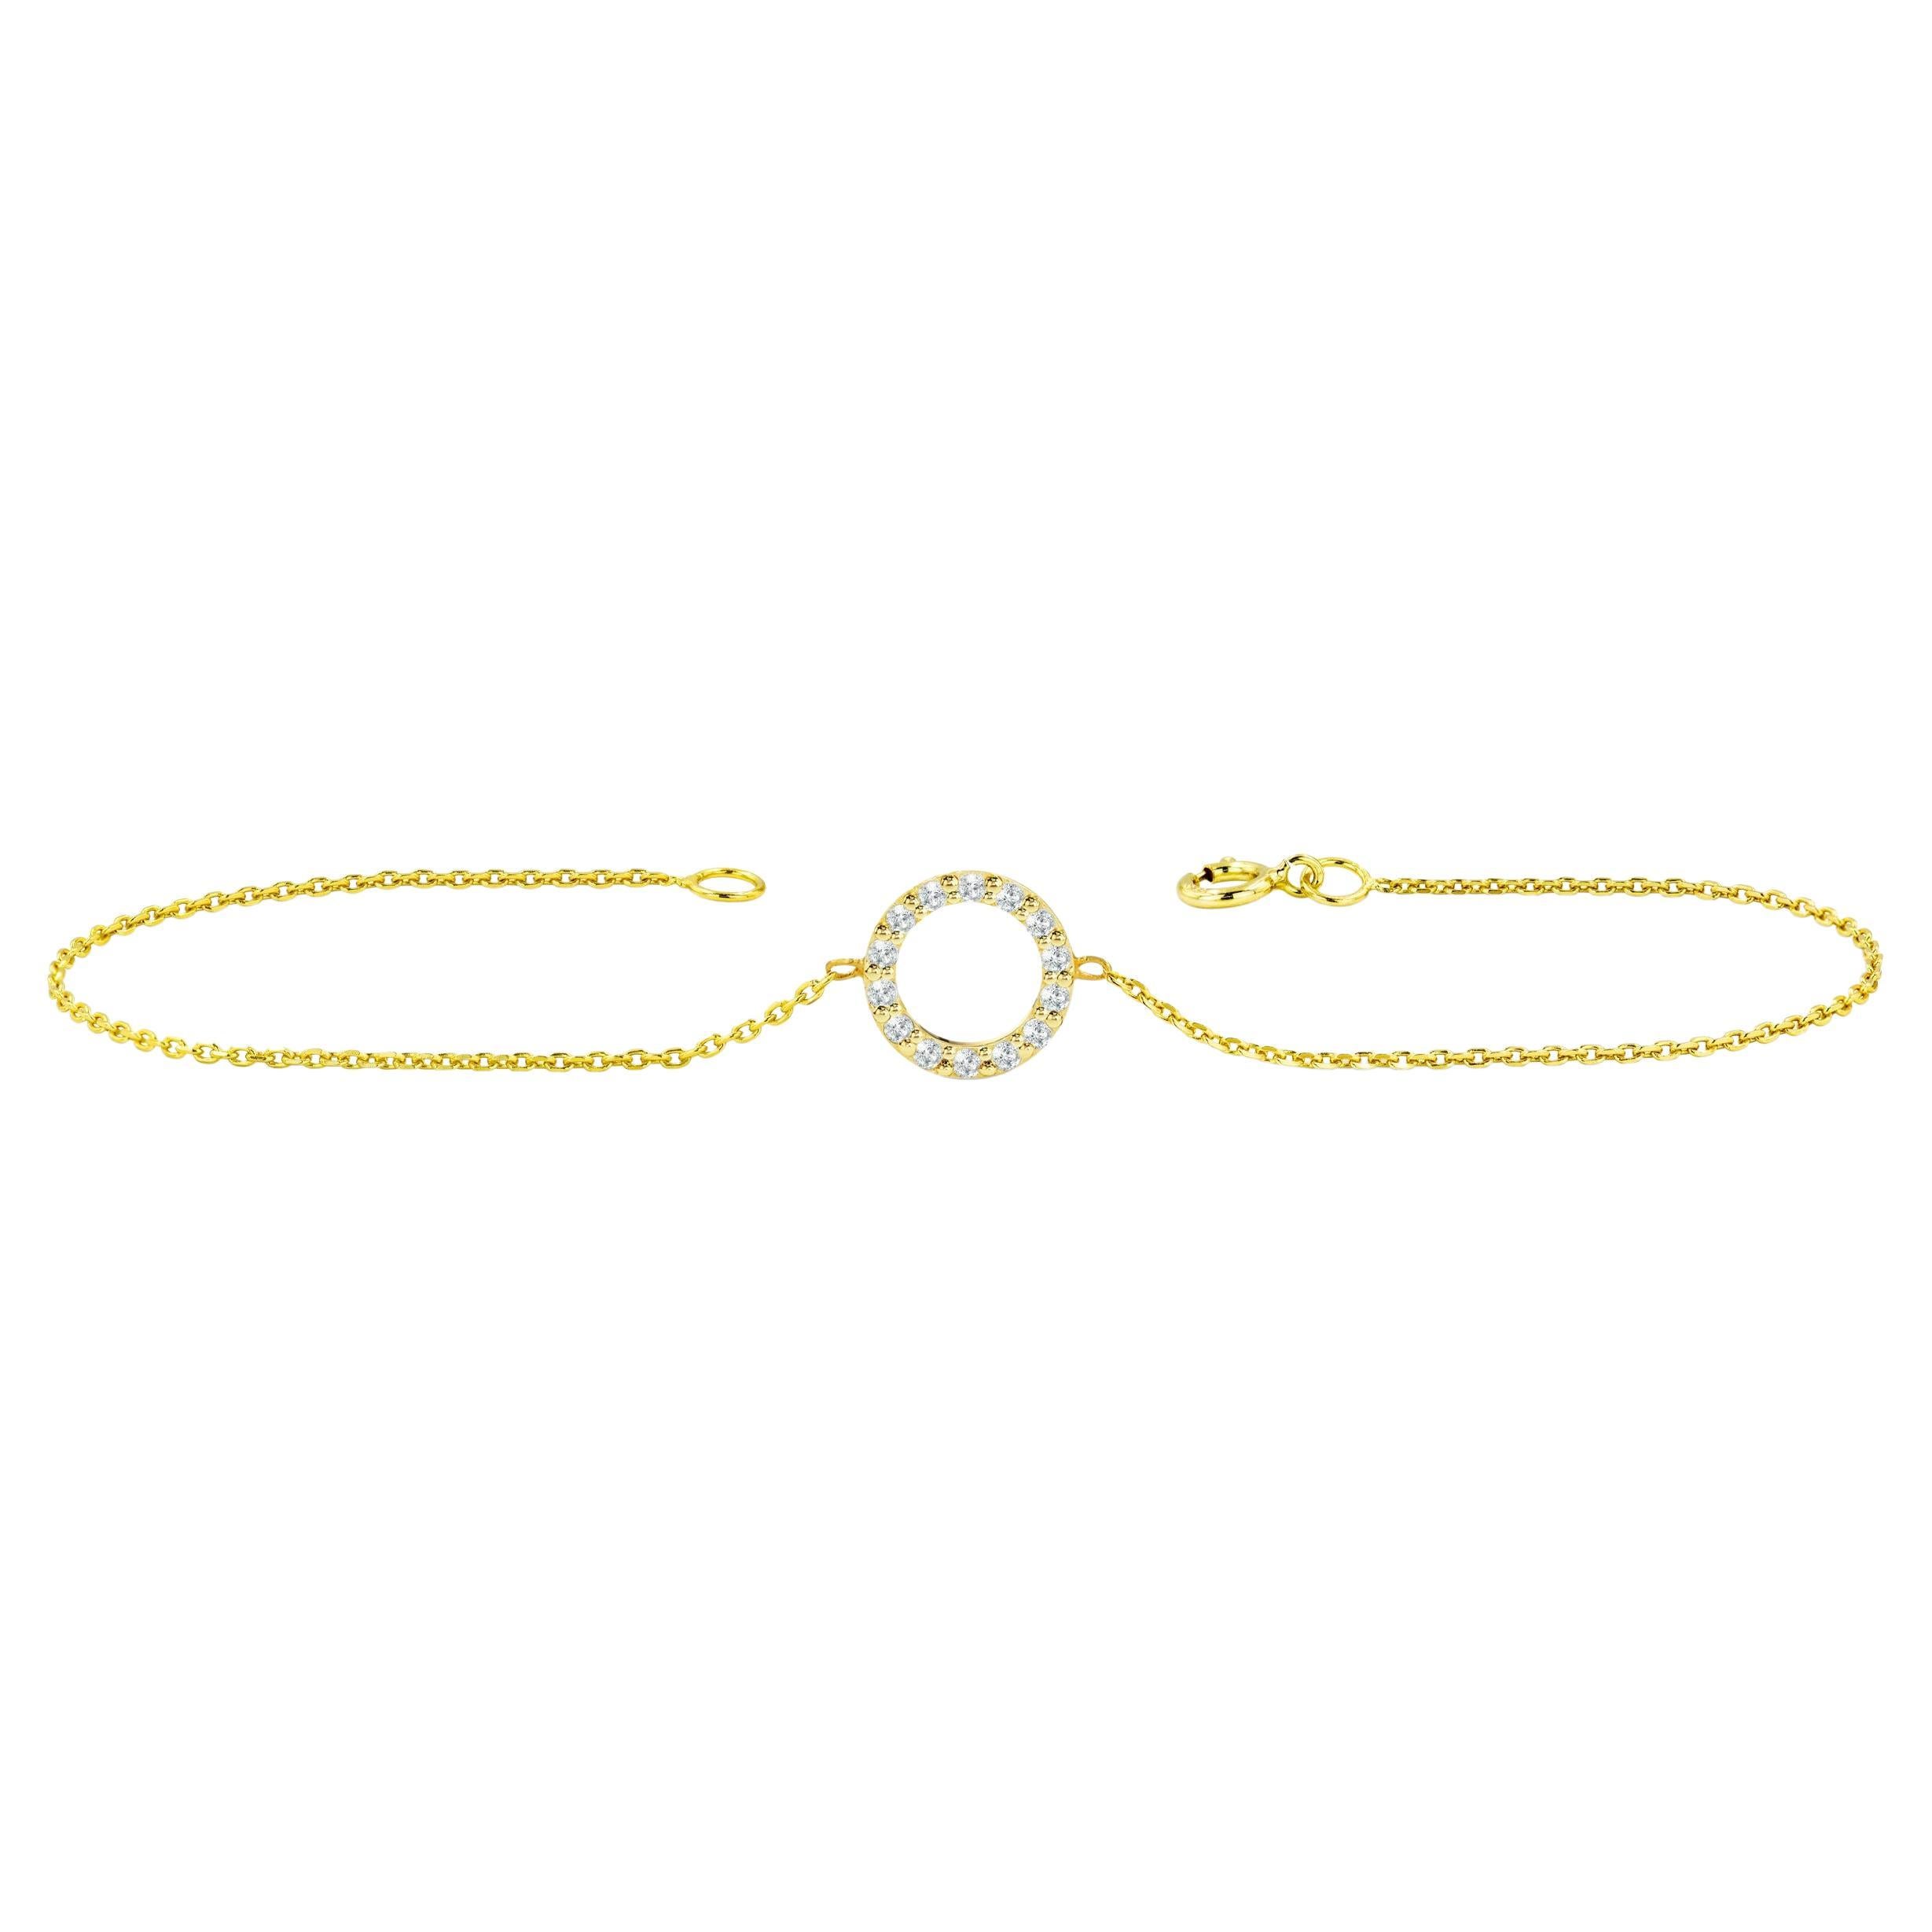 Le bracelet Cercle de Diamants est fabriqué en or massif 14k.
Disponible en trois couleurs d'or, or blanc / or rose / or jaune.

Diamant naturel véritable de taille ronde : chaque diamant est sélectionné à la main par mes soins pour en garantir la